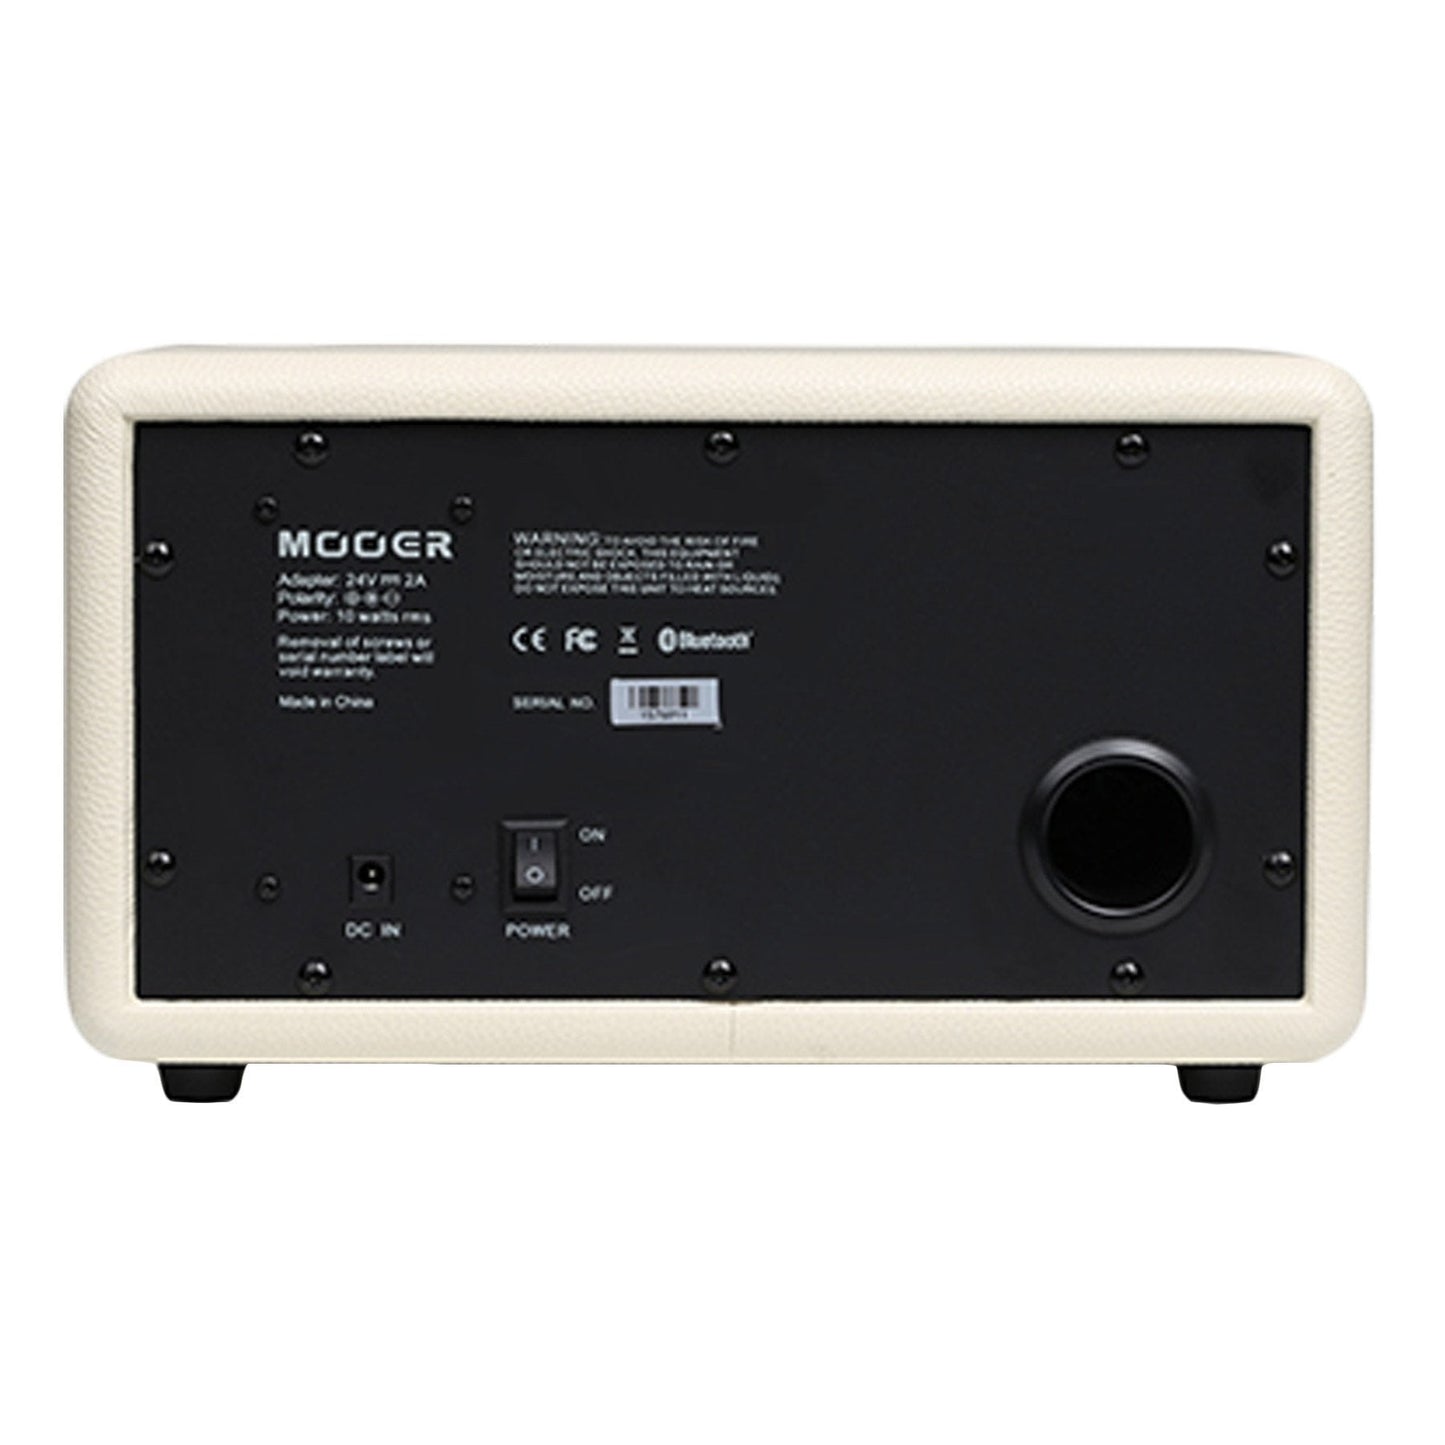 Mooer 'SilverEye 10' 2x16 Watt Stereo HiFi Speaker and Desktop Instrument Amplifier